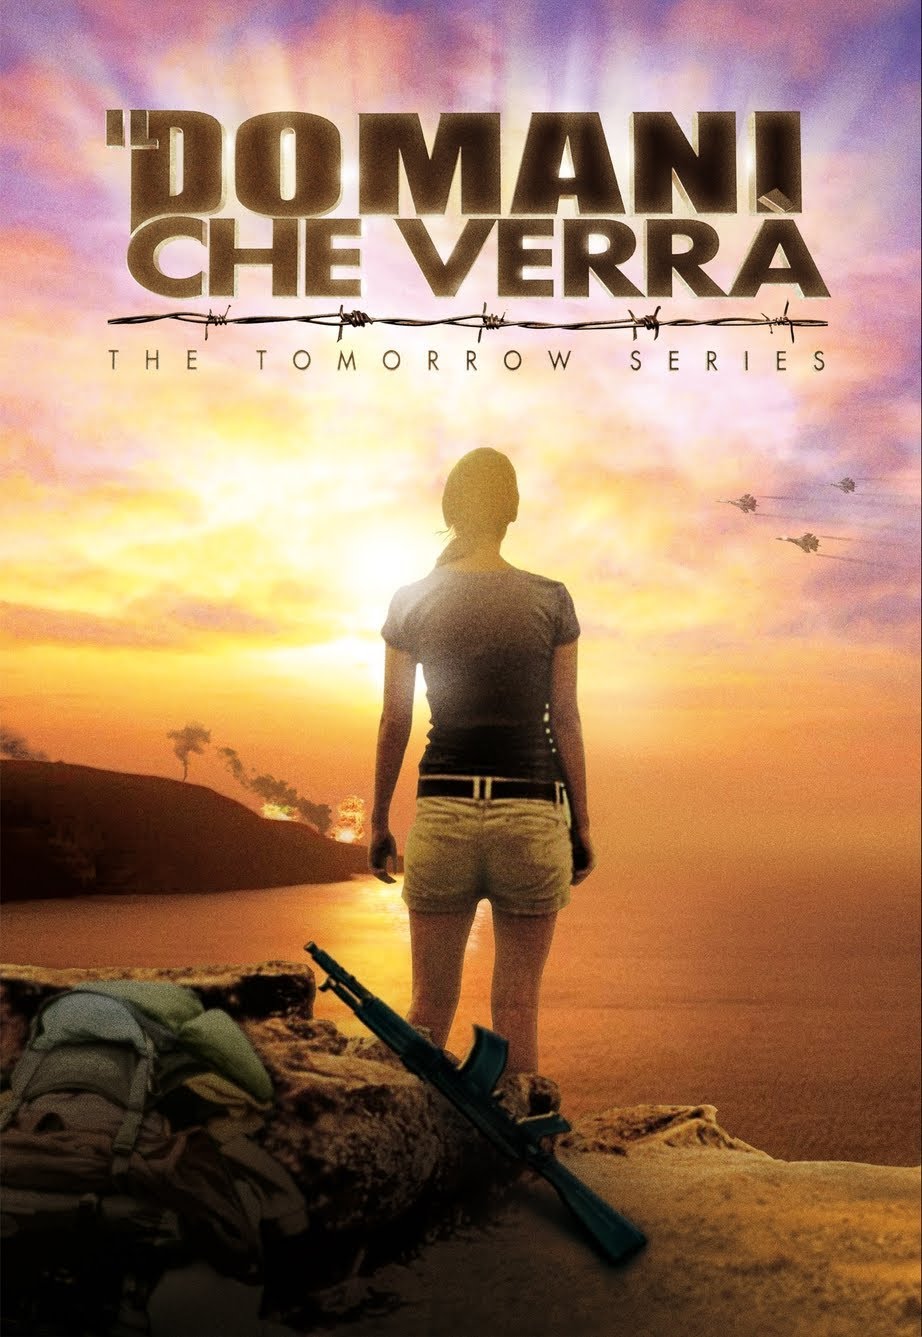 The Tomorrow Series – Il domani che verrà [HD] (2011)